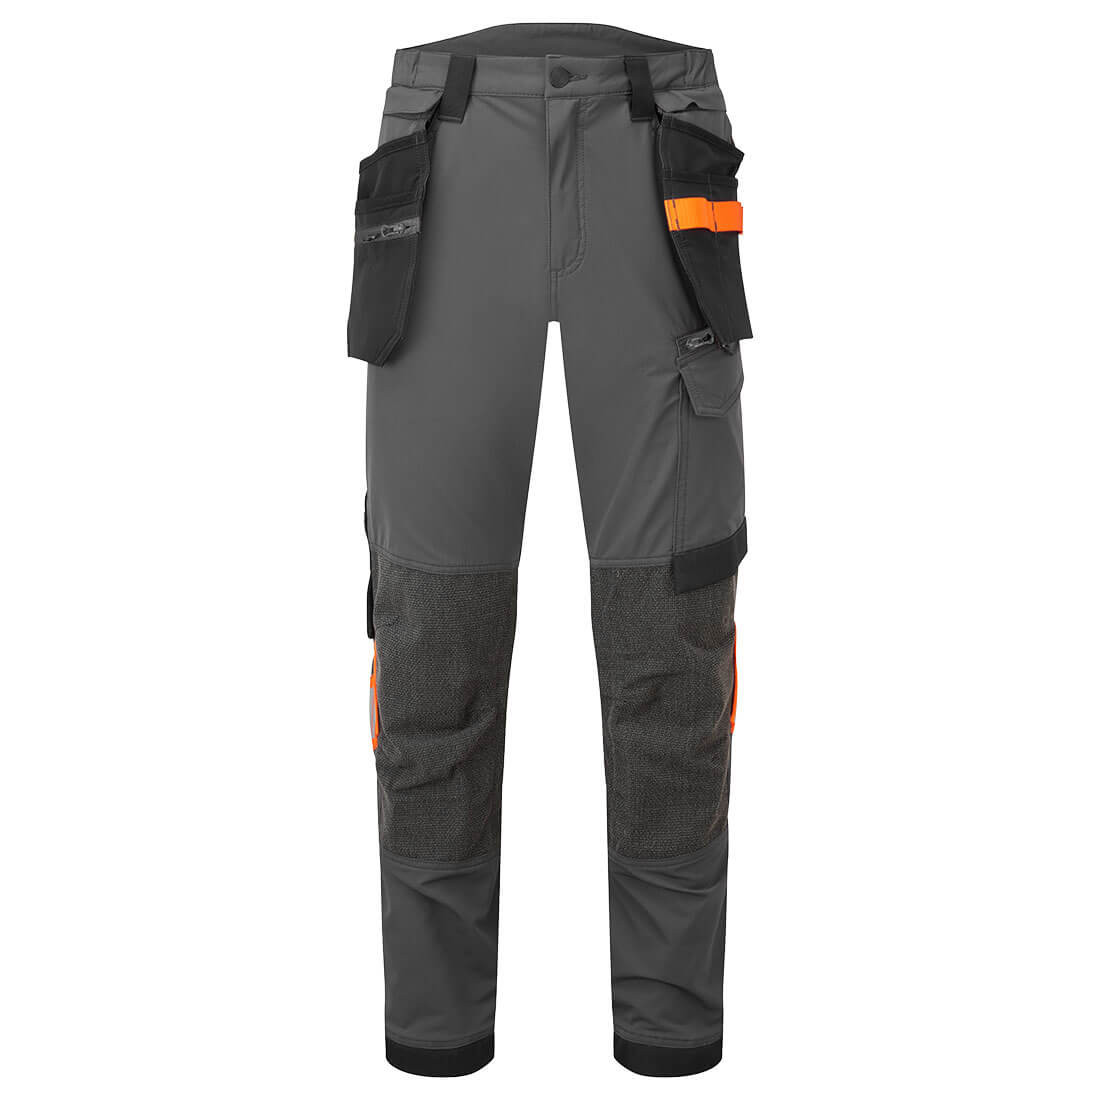 Pantalon de travail élastique EV4 avec poches Holster - Les vêtements de protection